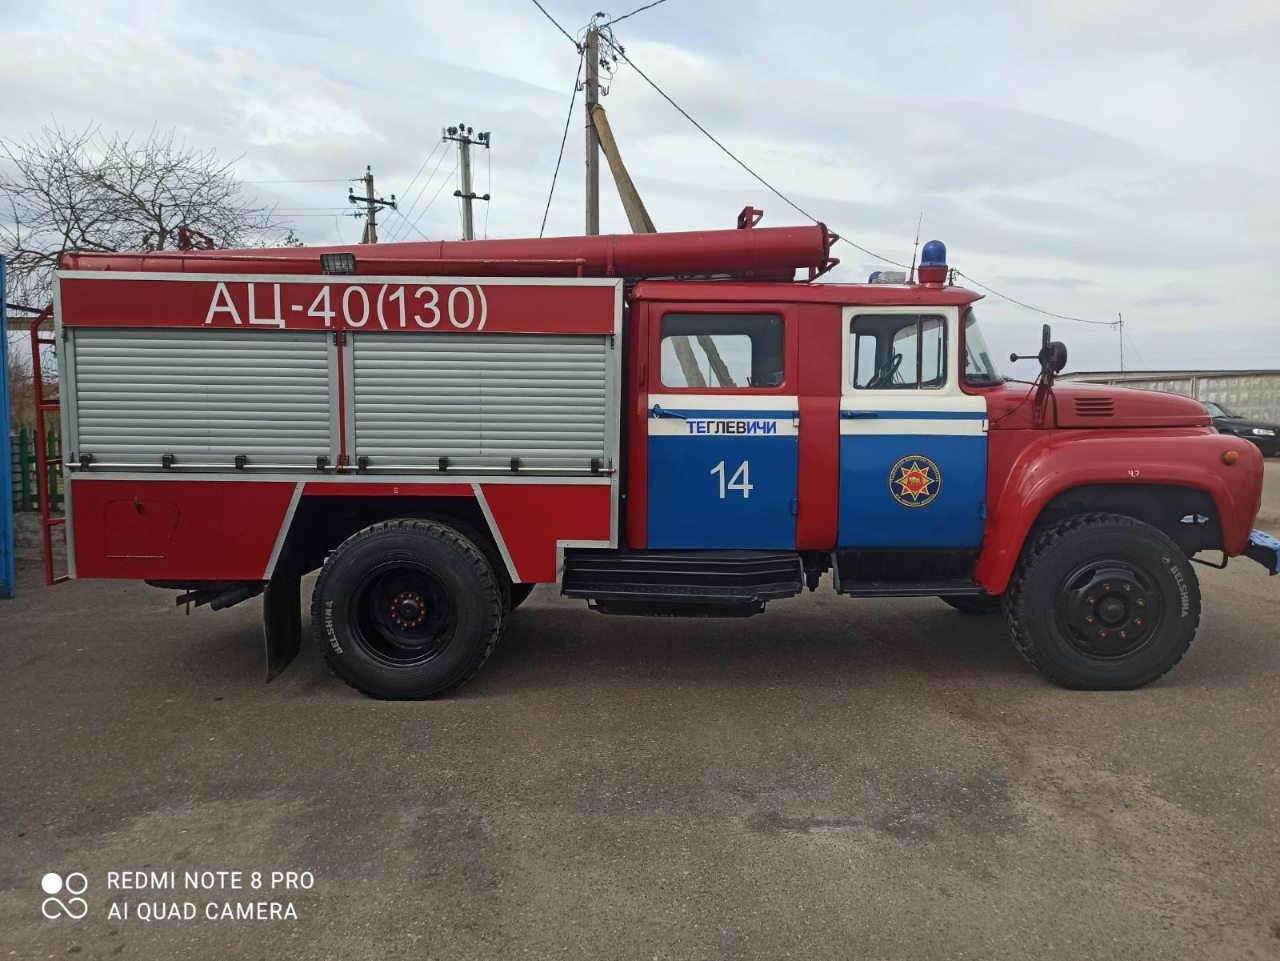 Пожарная машина по цене нового смартфона: МЧС Беларуси распродает десятки пожарных машин